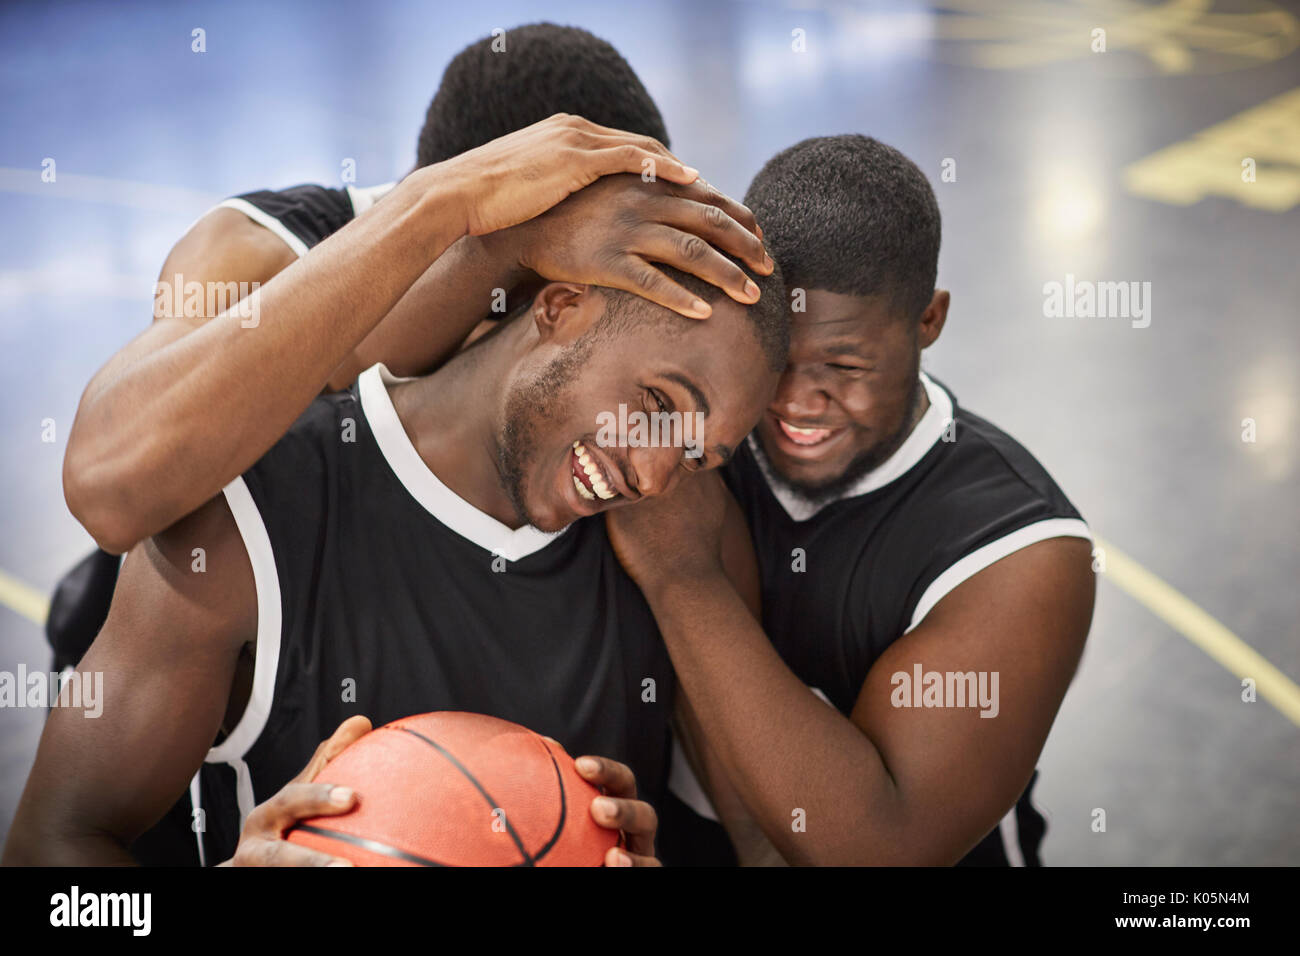 Felices los jóvenes jugadores de baloncesto masculino abrazando y celebrando después de la victoria Foto de stock